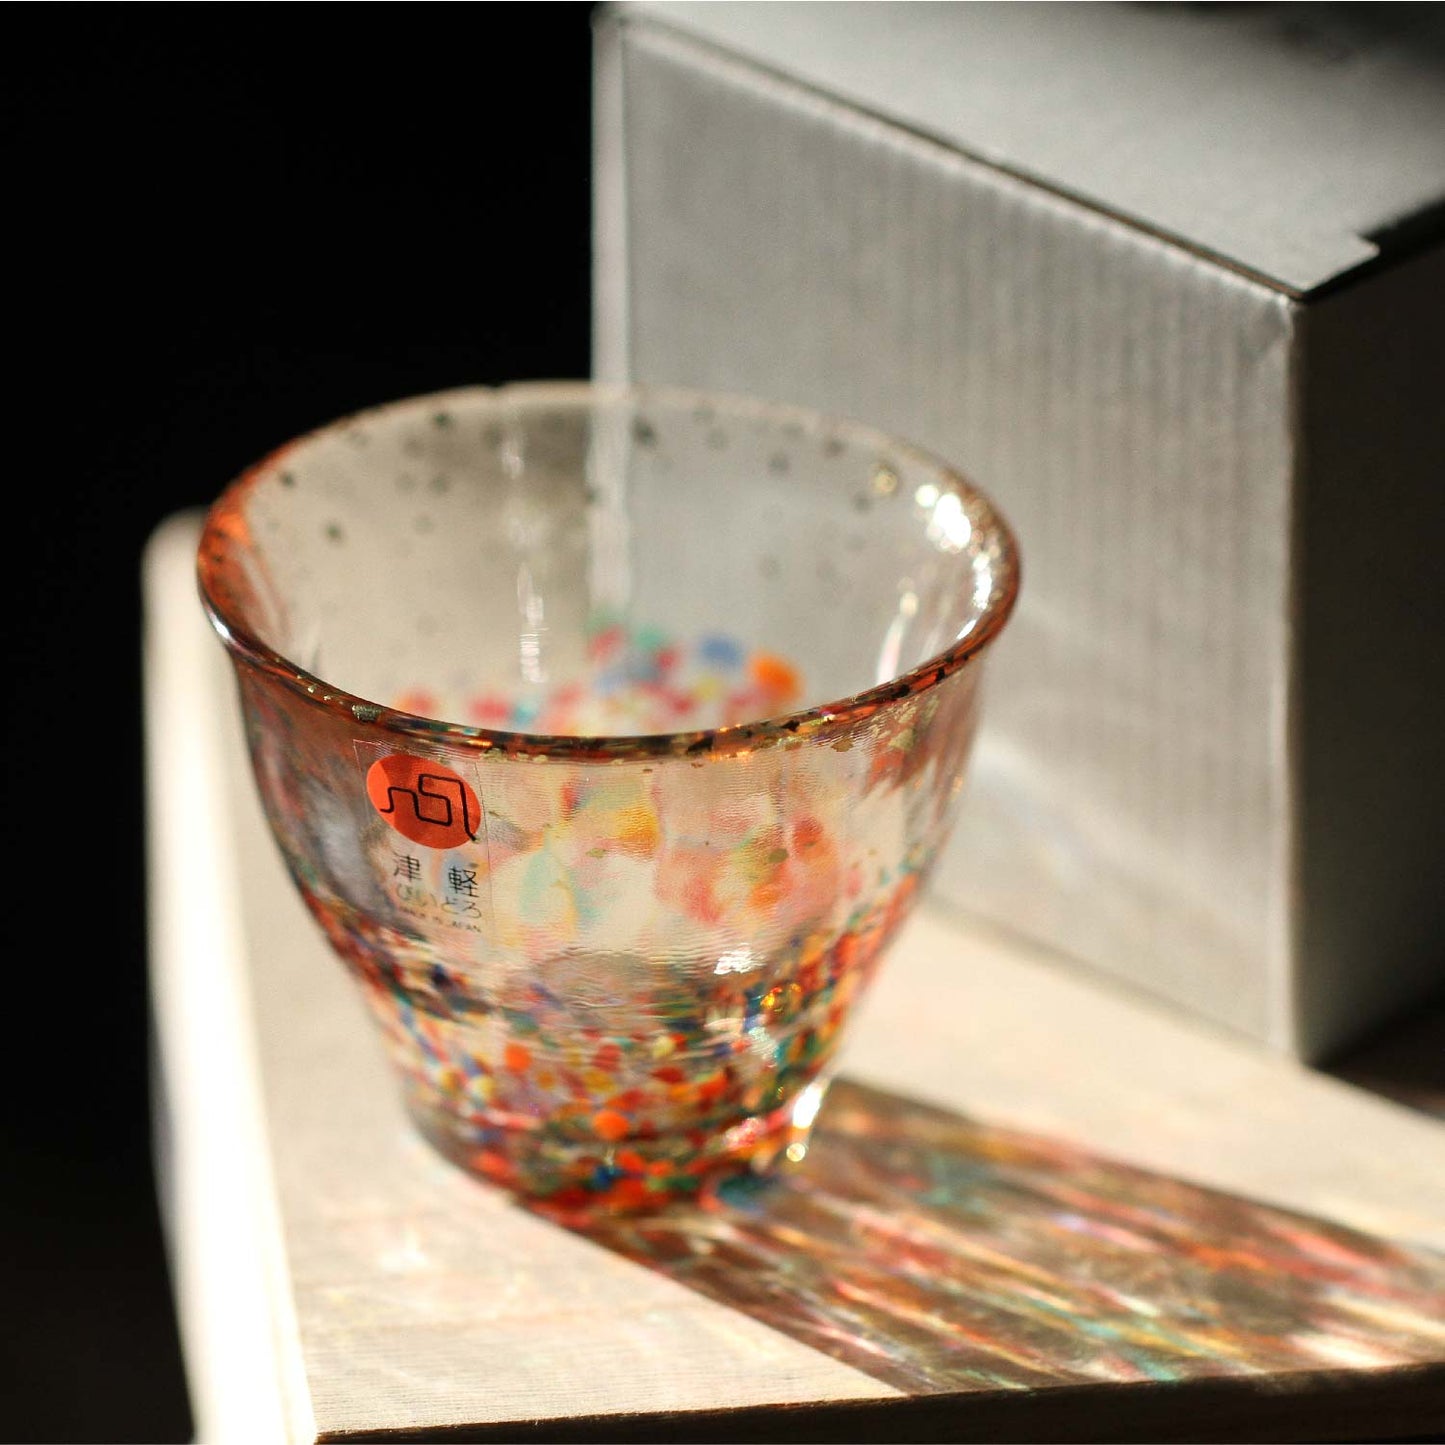 Tsugaru Vidro Gold Glass MATSURI / HANABI